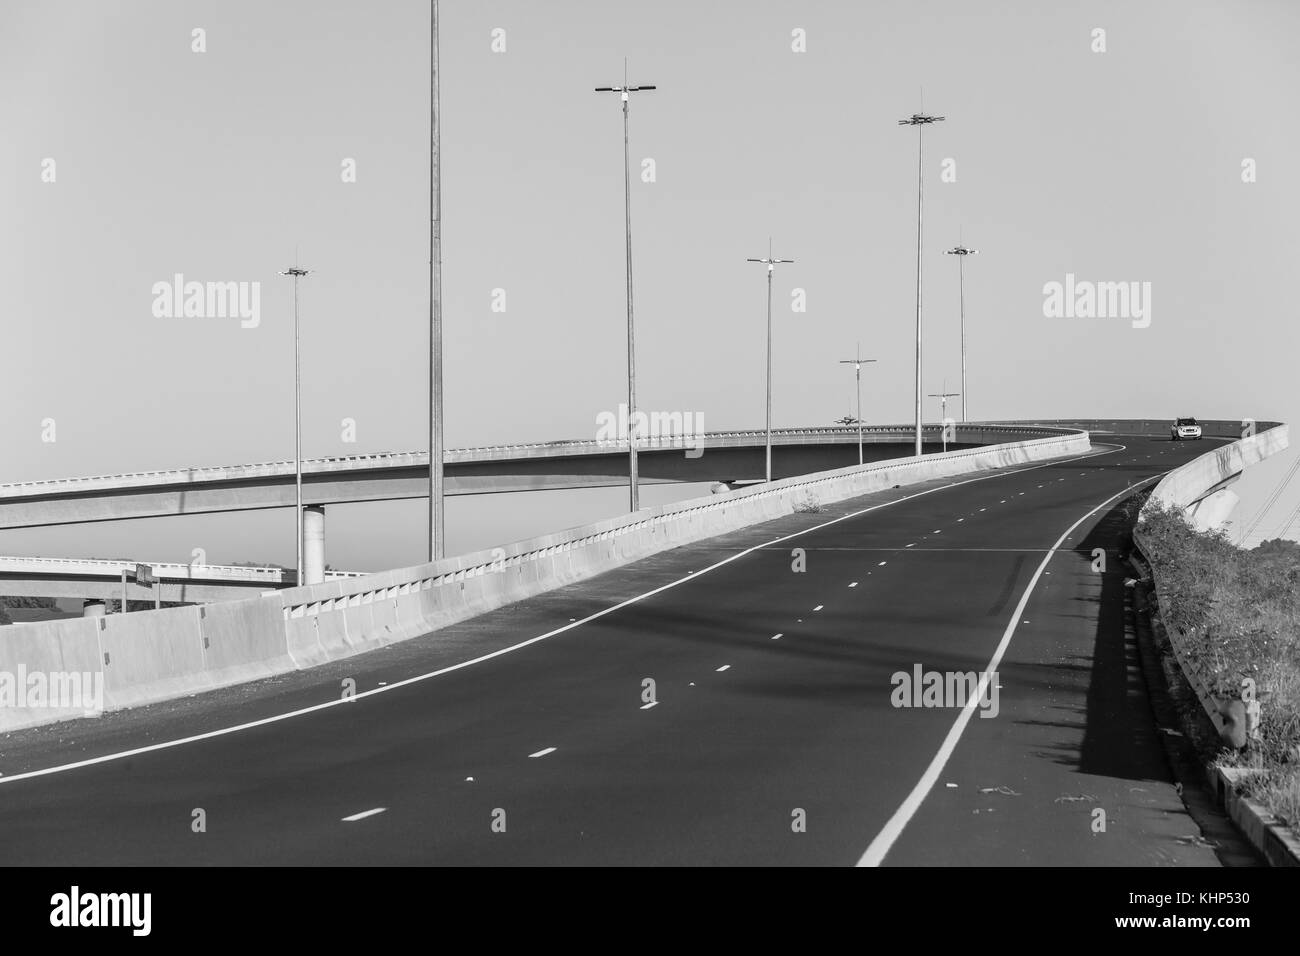 Sobrecarga de la autopista Carretera flyover rampa de entrada y salida de las estructuras en blanco y negro. Foto de stock